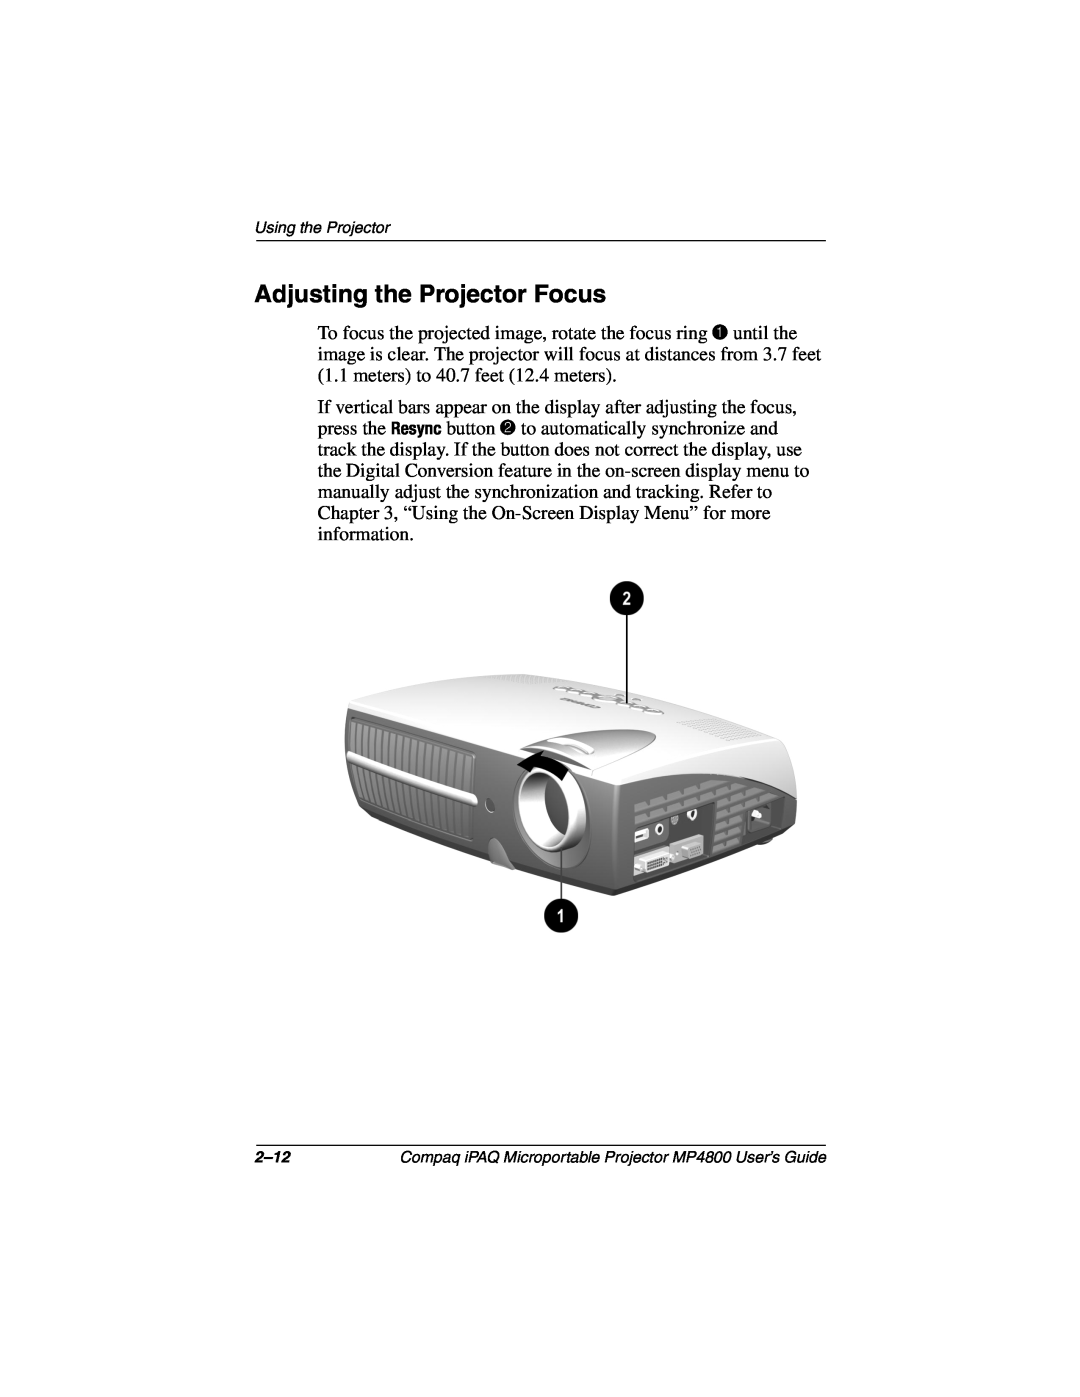 Compaq MP4800 manual Adjusting the Projector Focus 